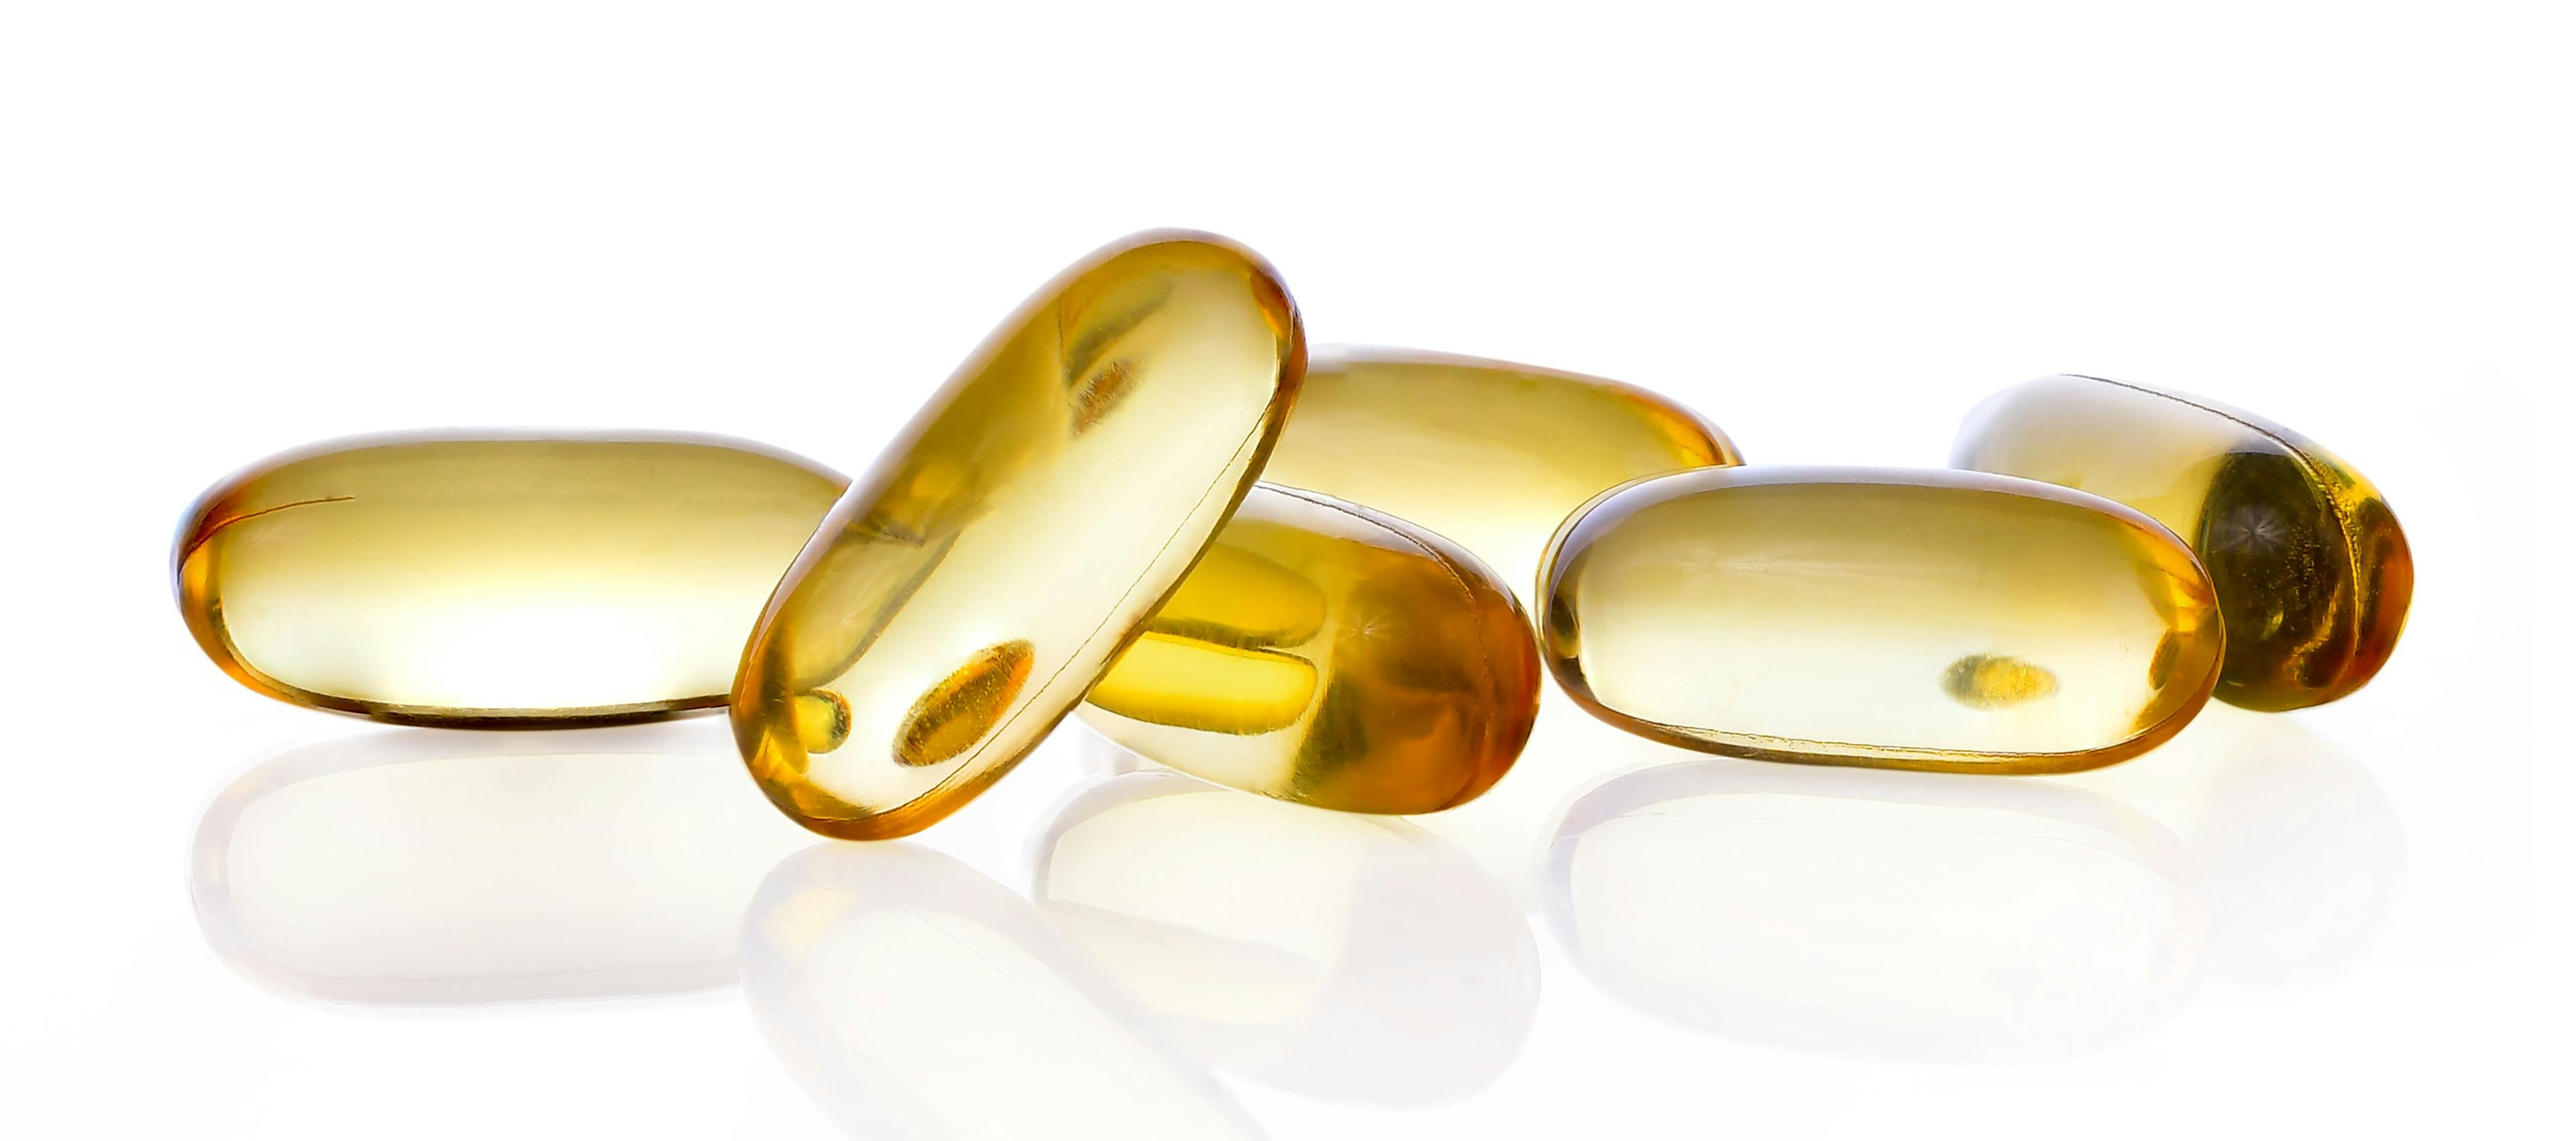 close up of vitamin D capsules